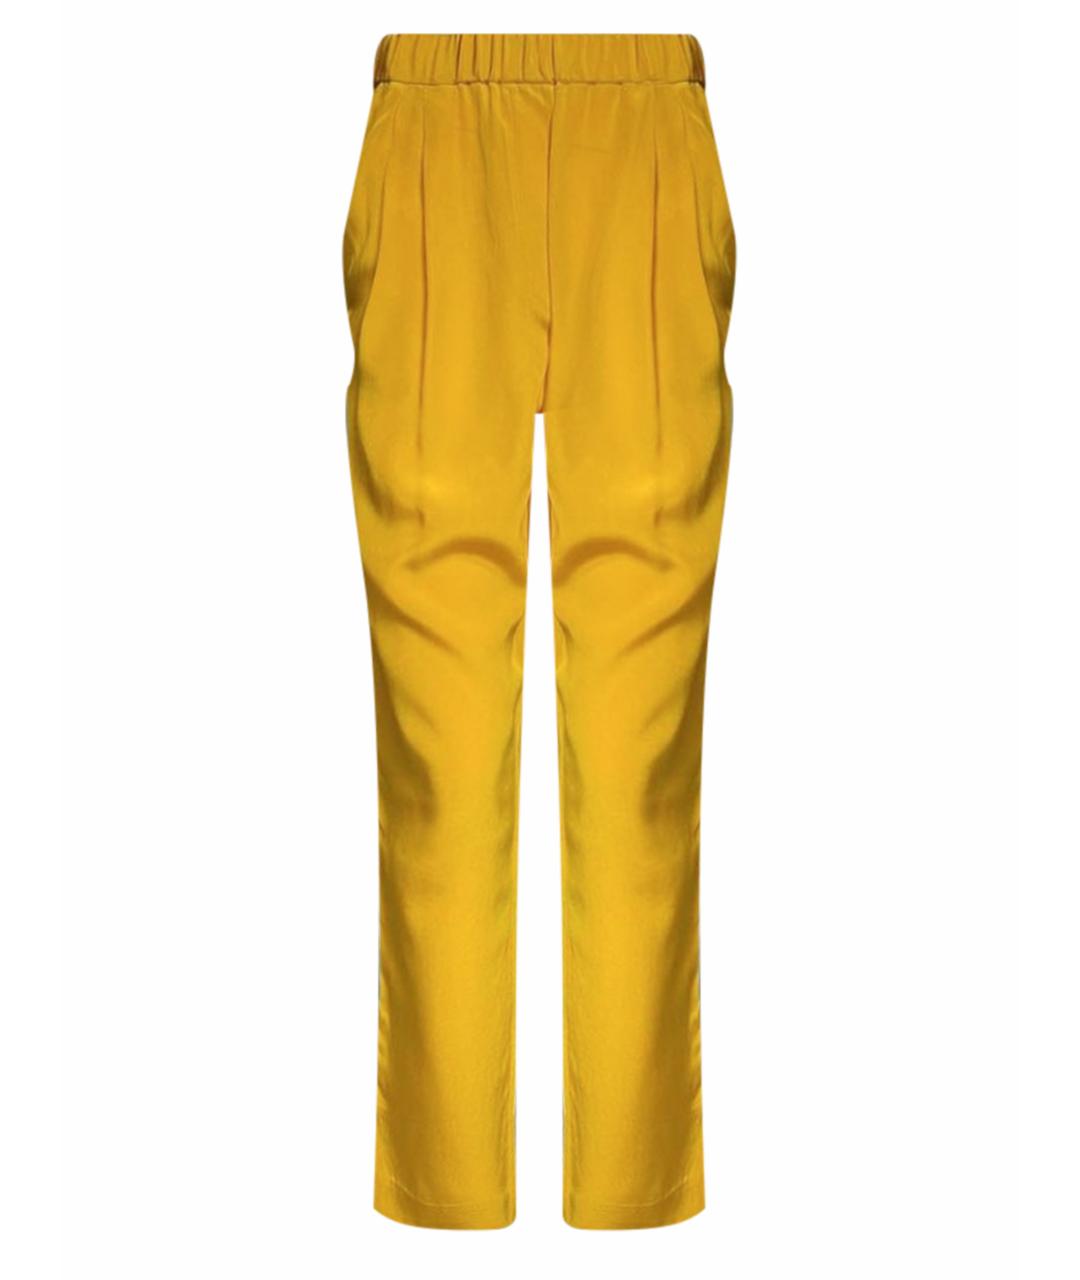 3.1 PHILLIP LIM Желтые шелковые брюки узкие, фото 1